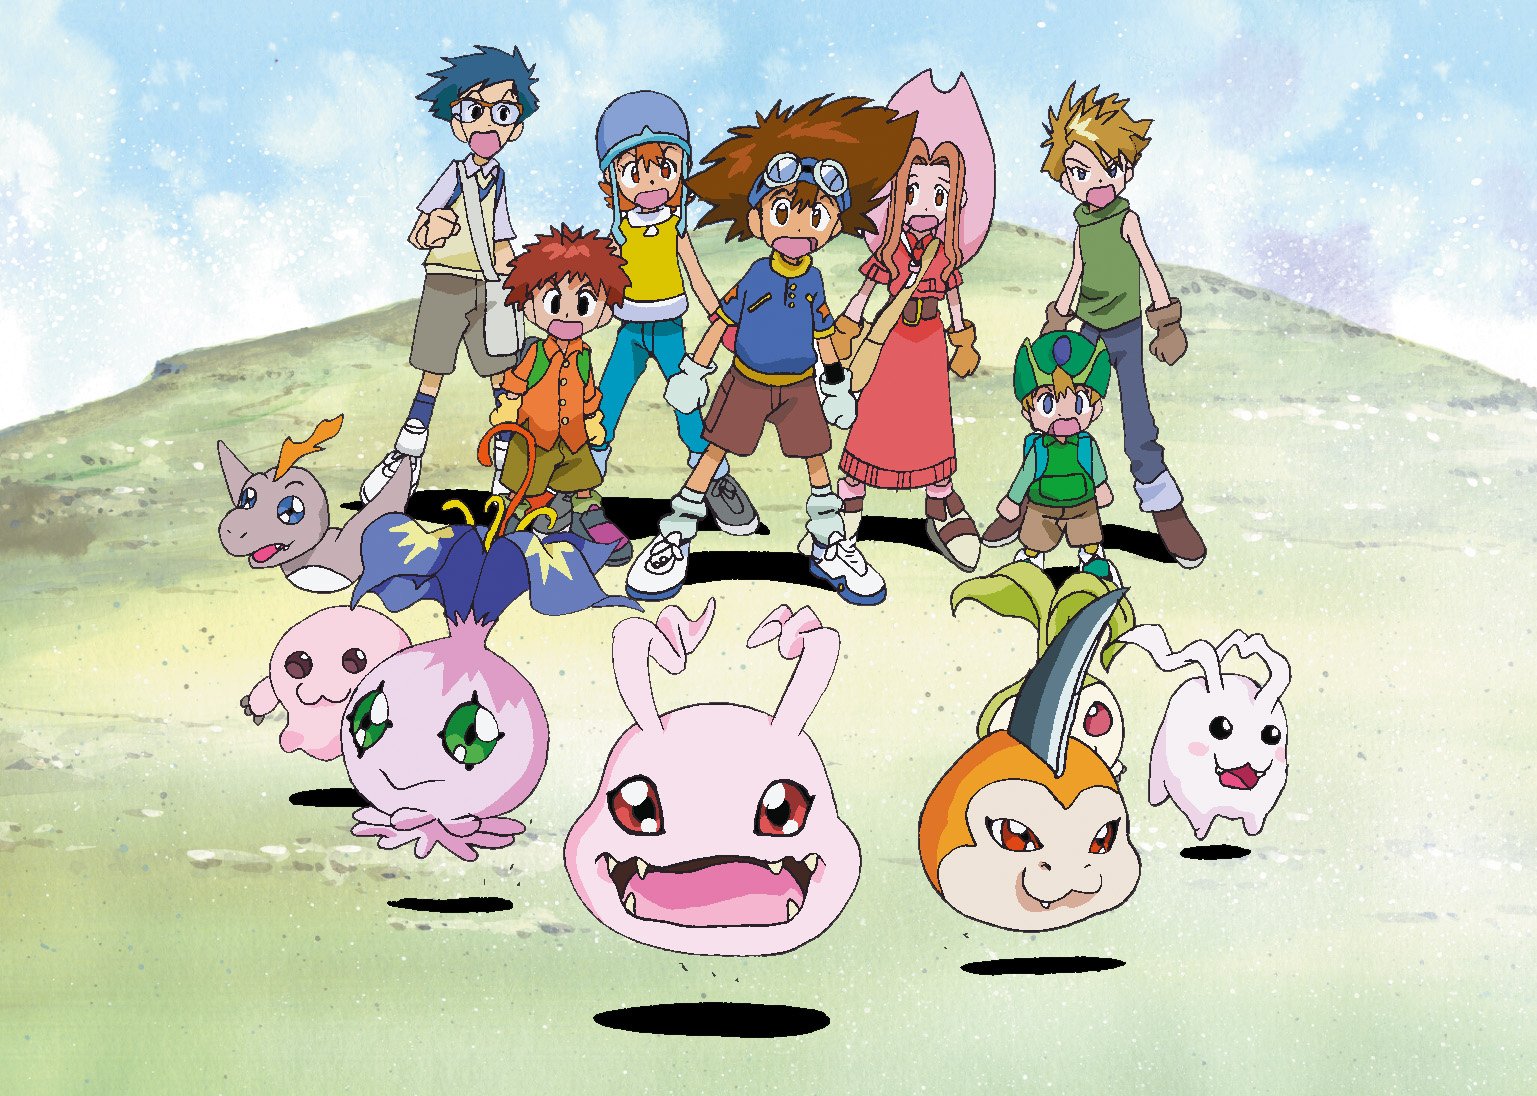 ≫ Digimon Adventure Filler List | Anime Filler Guide